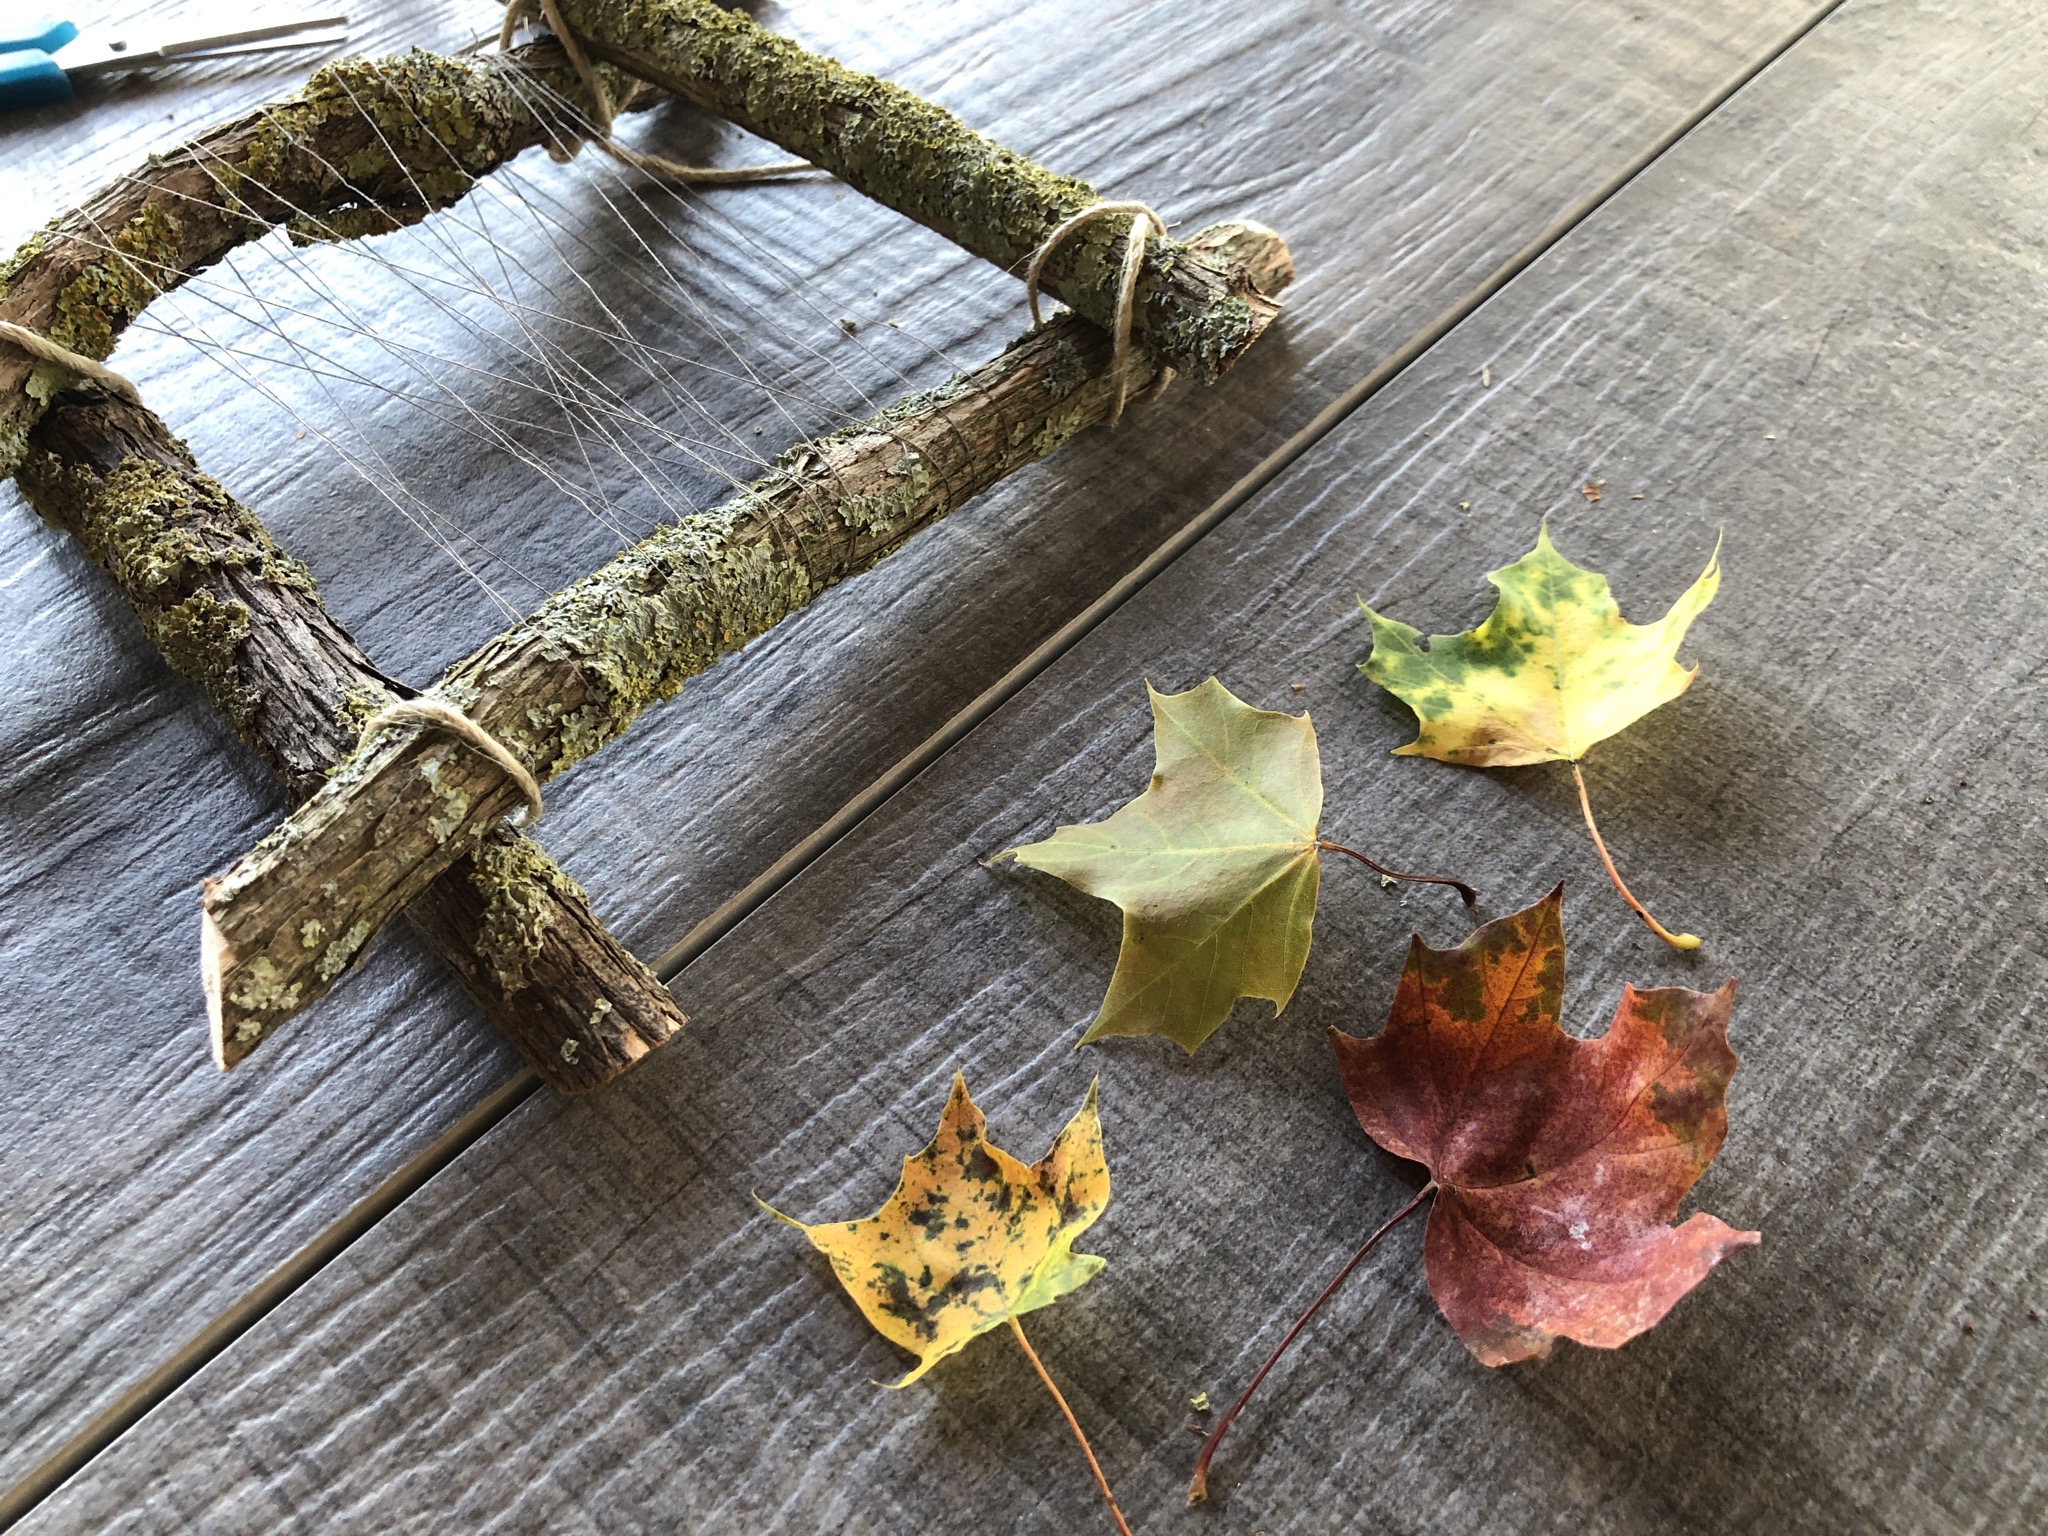 Bild zum Schritt 12 für das Bastel- und DIY-Abenteuer für Kinder: 'Sammelt bunte Herbstblätter und flechtet sie in das Fadennetz ein.'